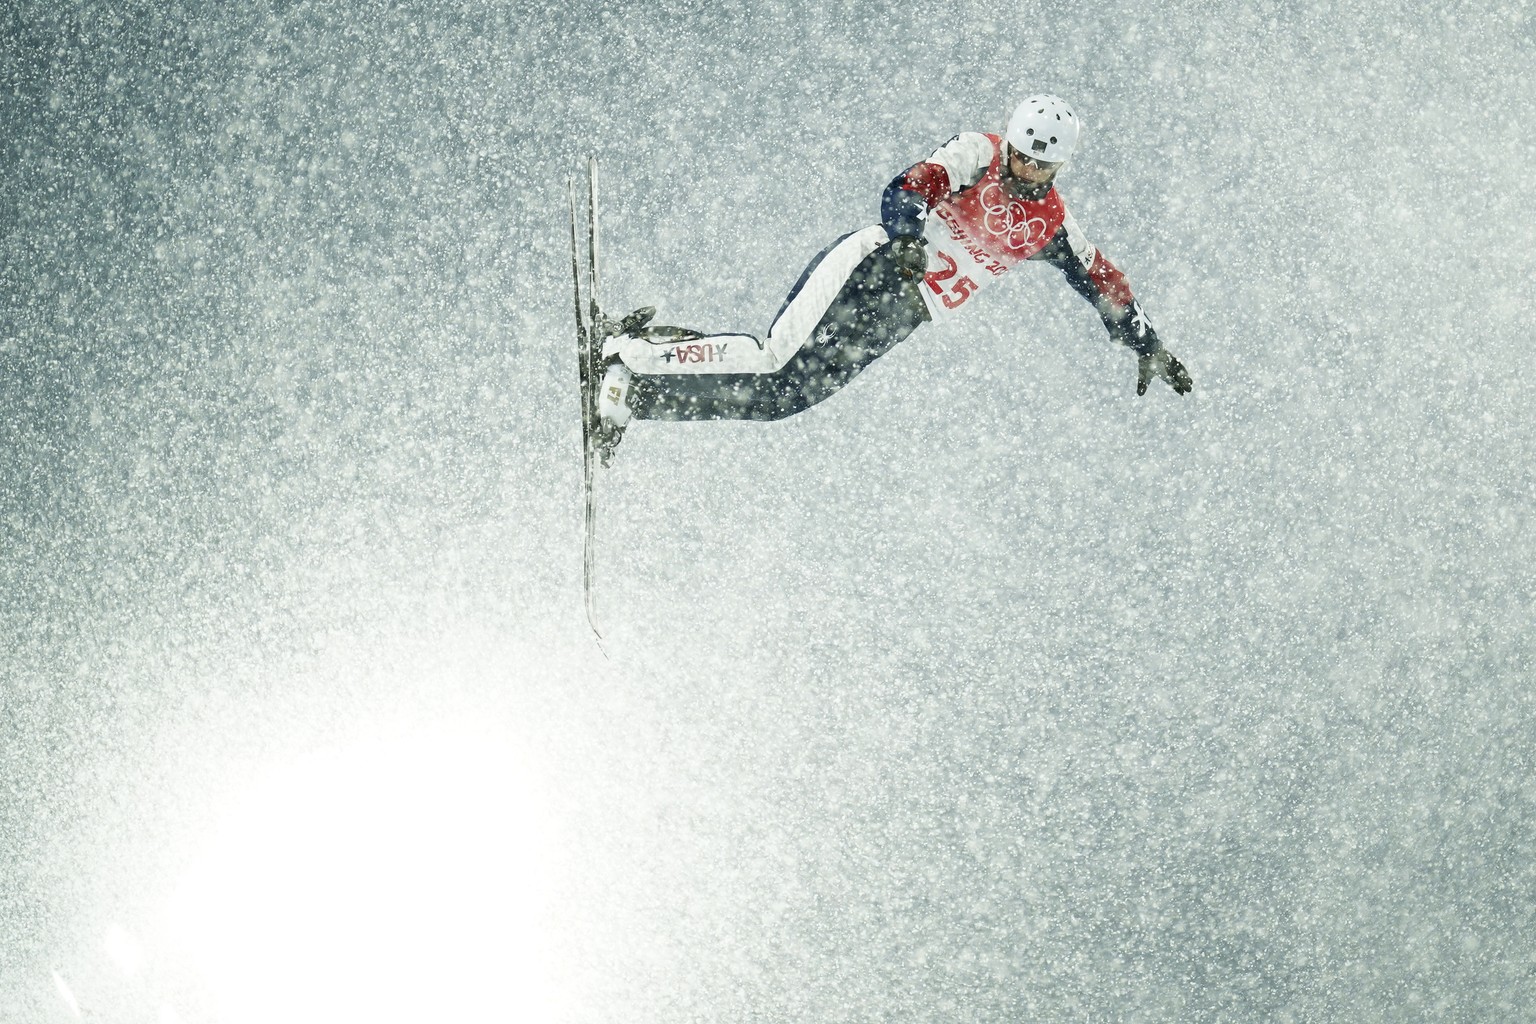 L'athlète d'Aerials Megan Nick s'envole à travers l'épais brouillard de neige.